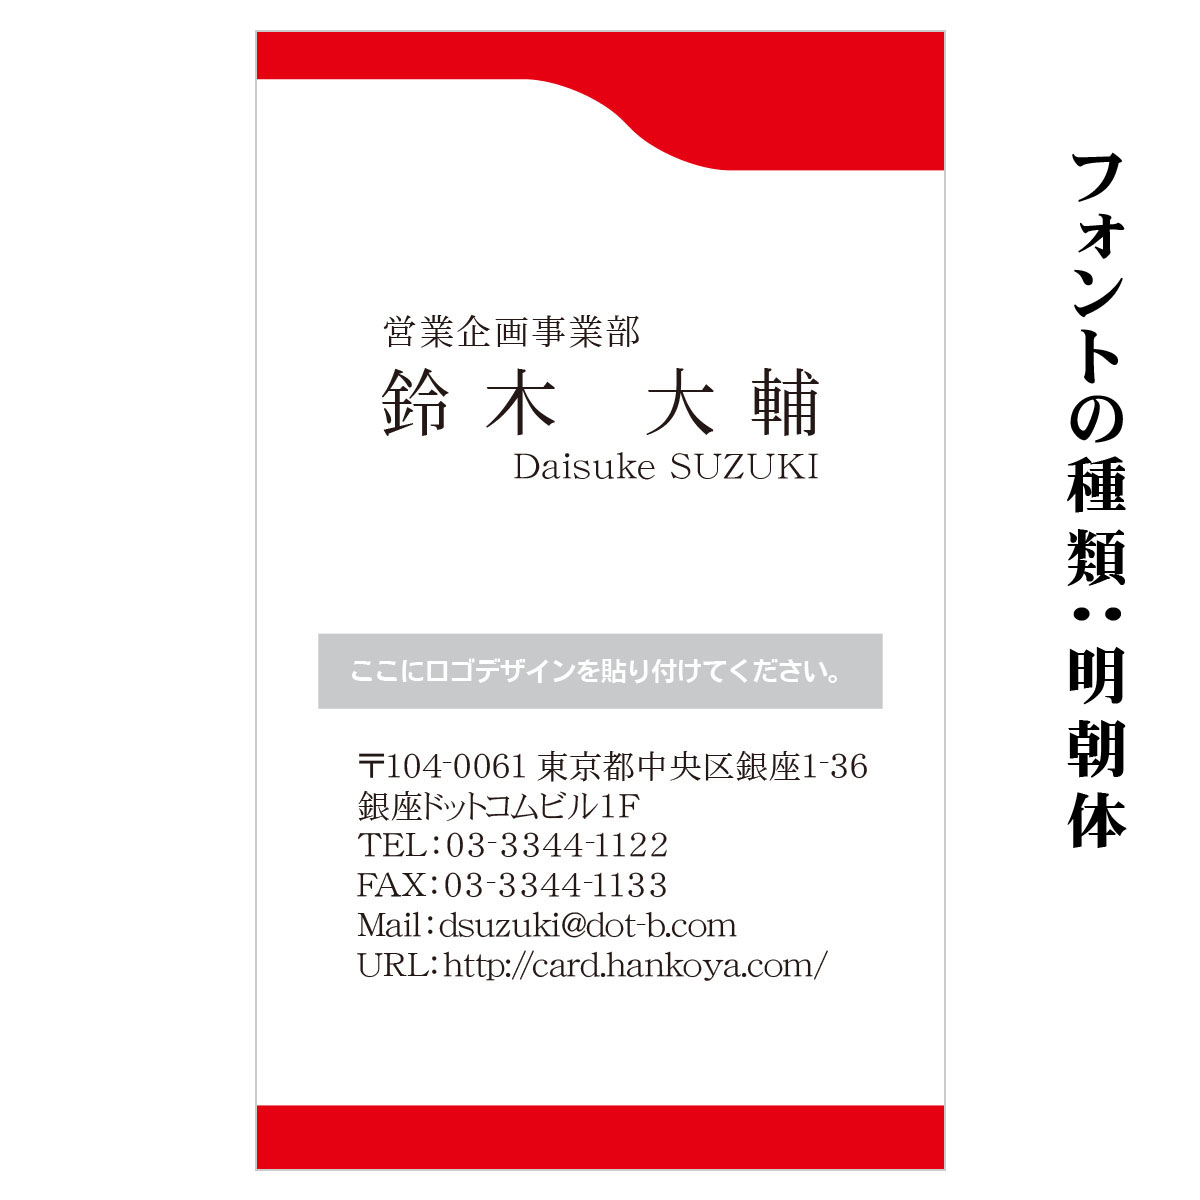 テキスト入稿名刺 タテ向き両面カラー印刷 HM-01 英語表記